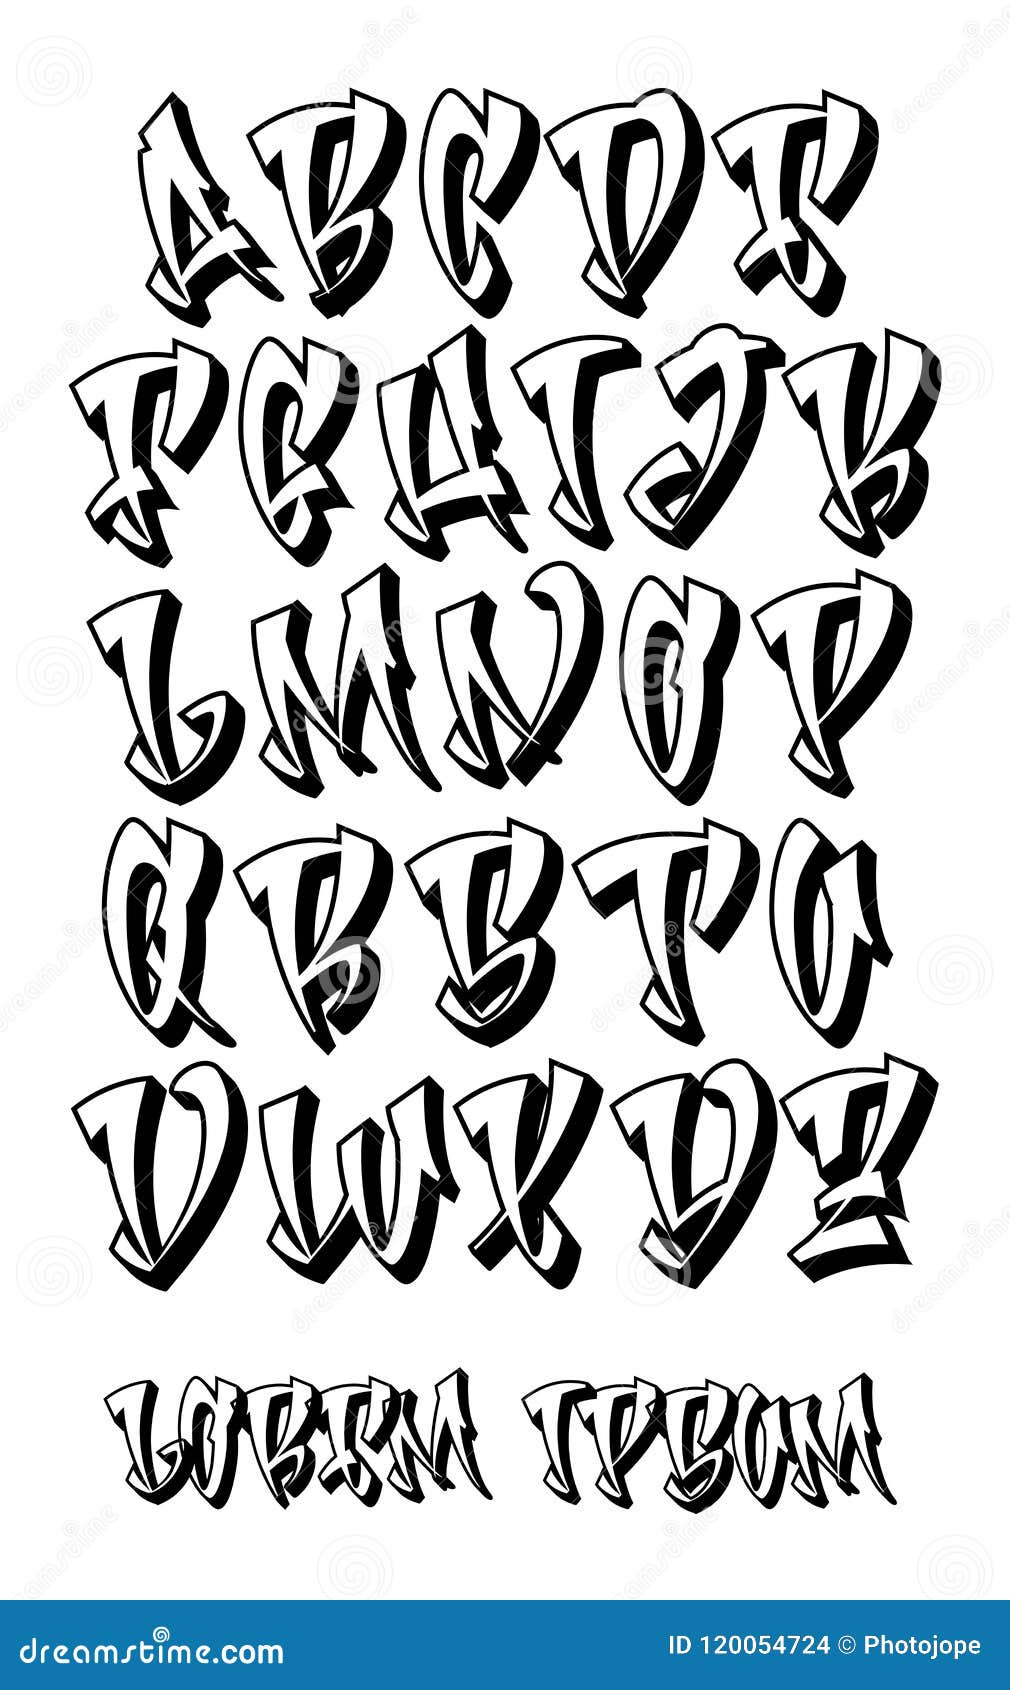 Graffiti 3D Alphabet- Hand Written - Vector Font Stock Vector ...